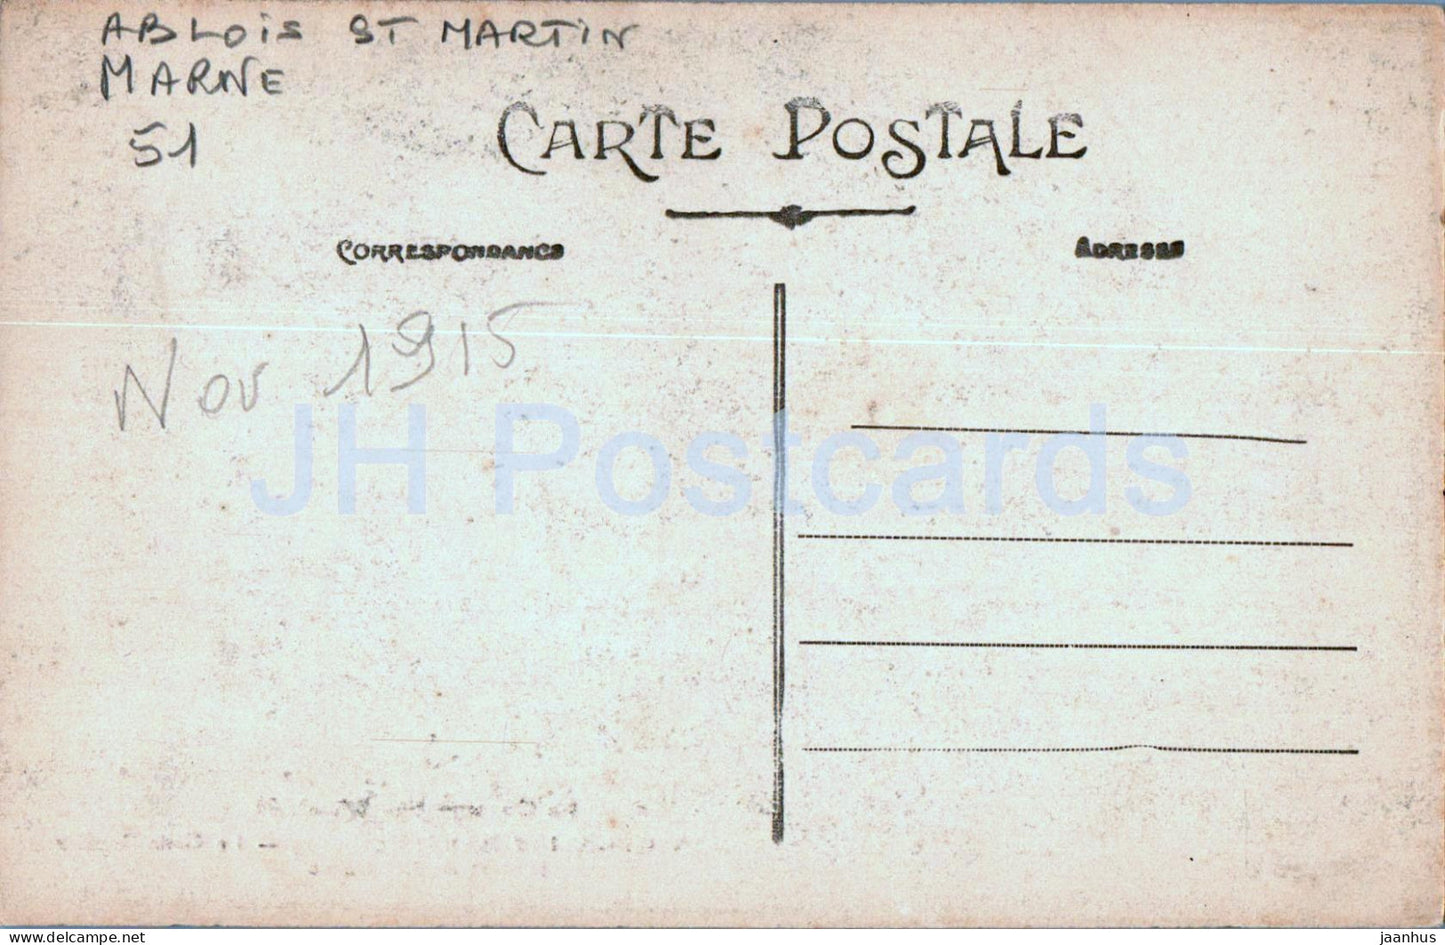 Ablois Saint Martin - Le Gros Rocher - Depart de la Source - alte Postkarte - 1915 - Frankreich - gebraucht 